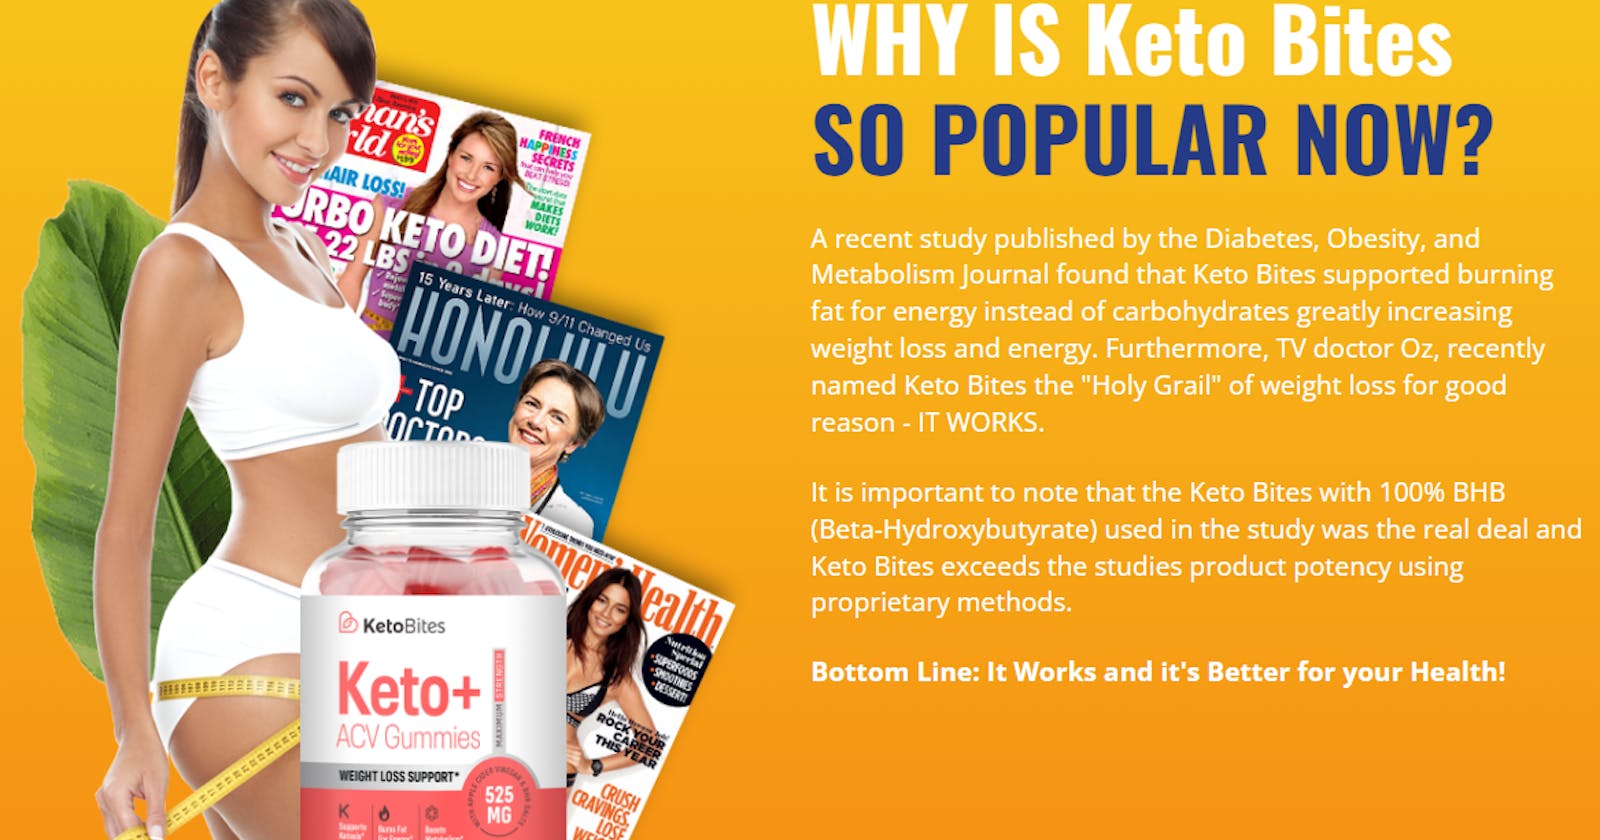 Enjoy the Benefits of Ketosis with Keto Bites Keto+ ACV Gummies!